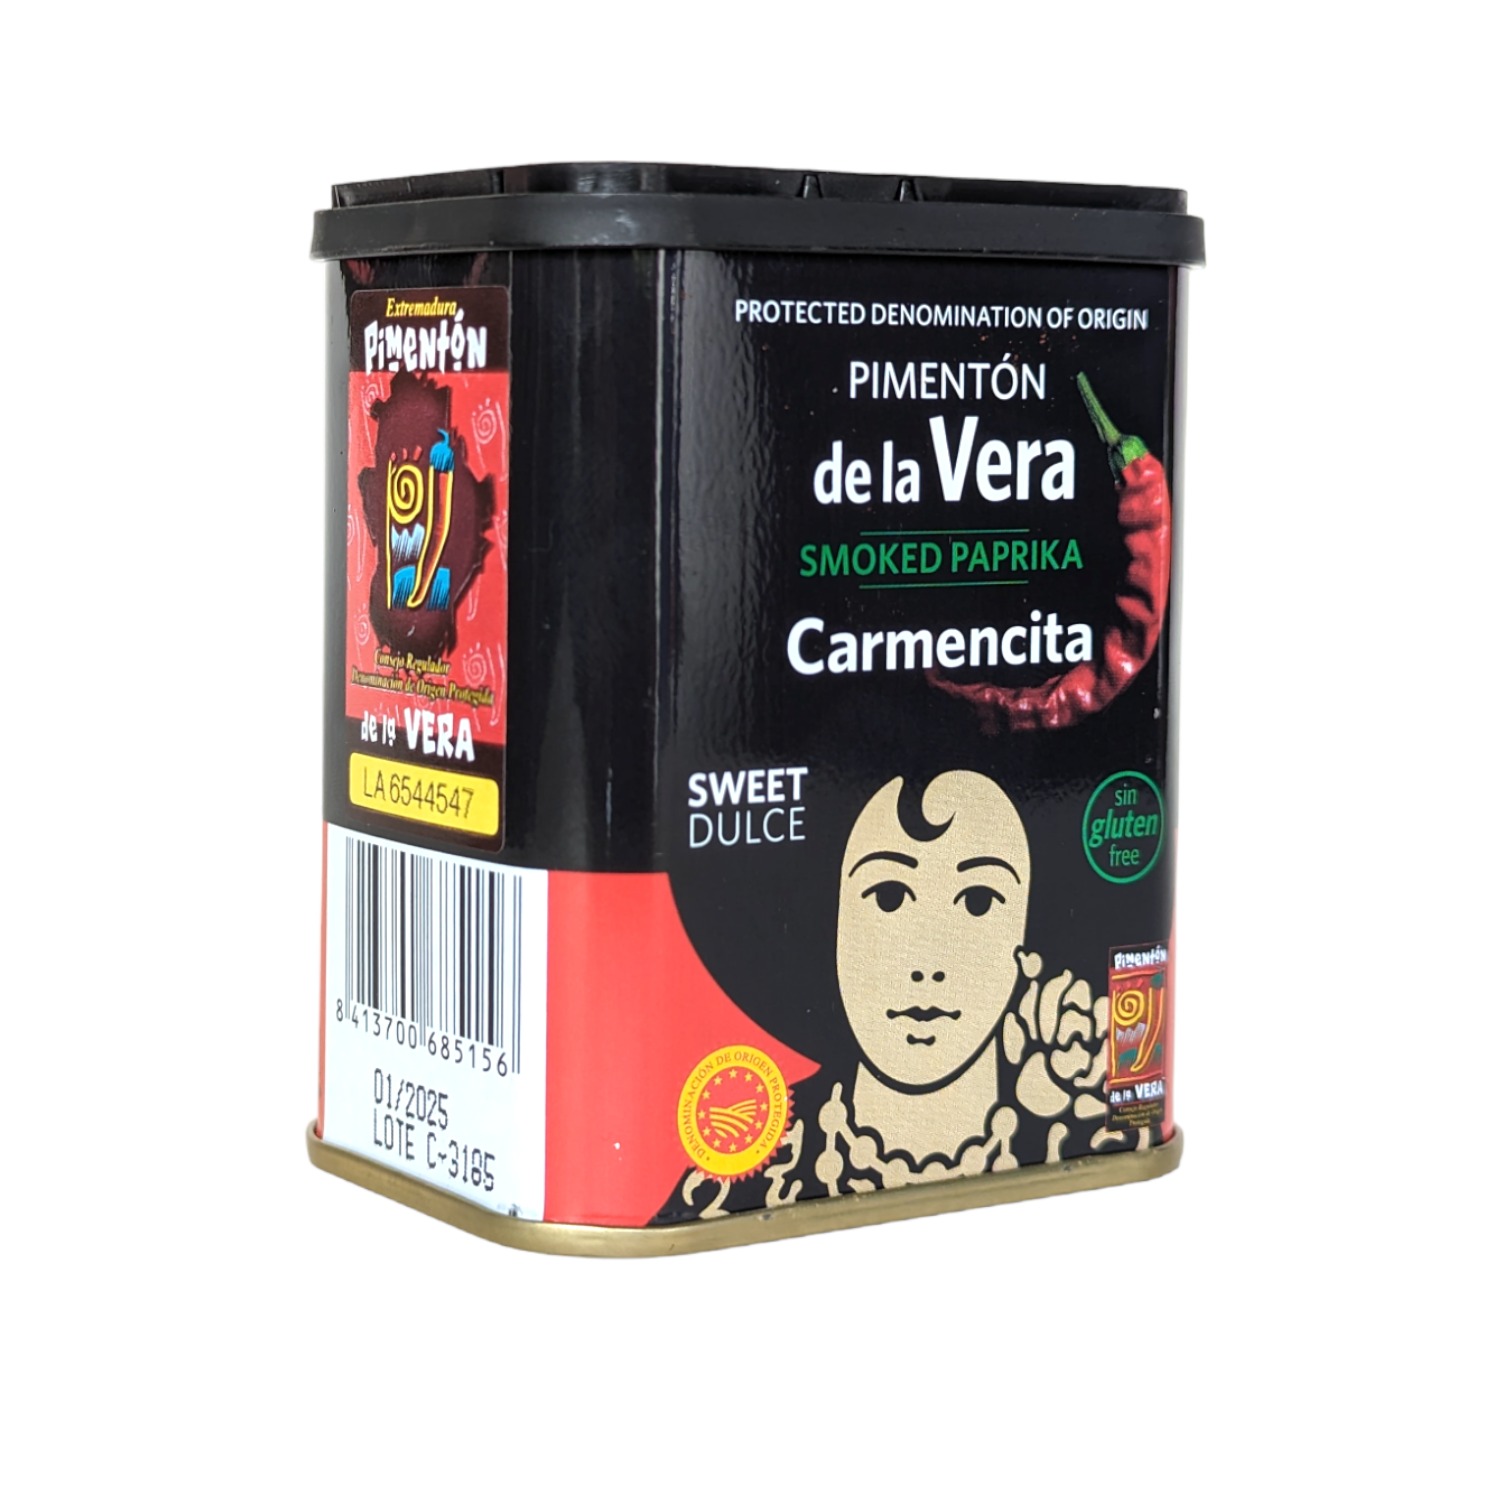 Pimentón de la Vera (Smoked Sweet Paprika)